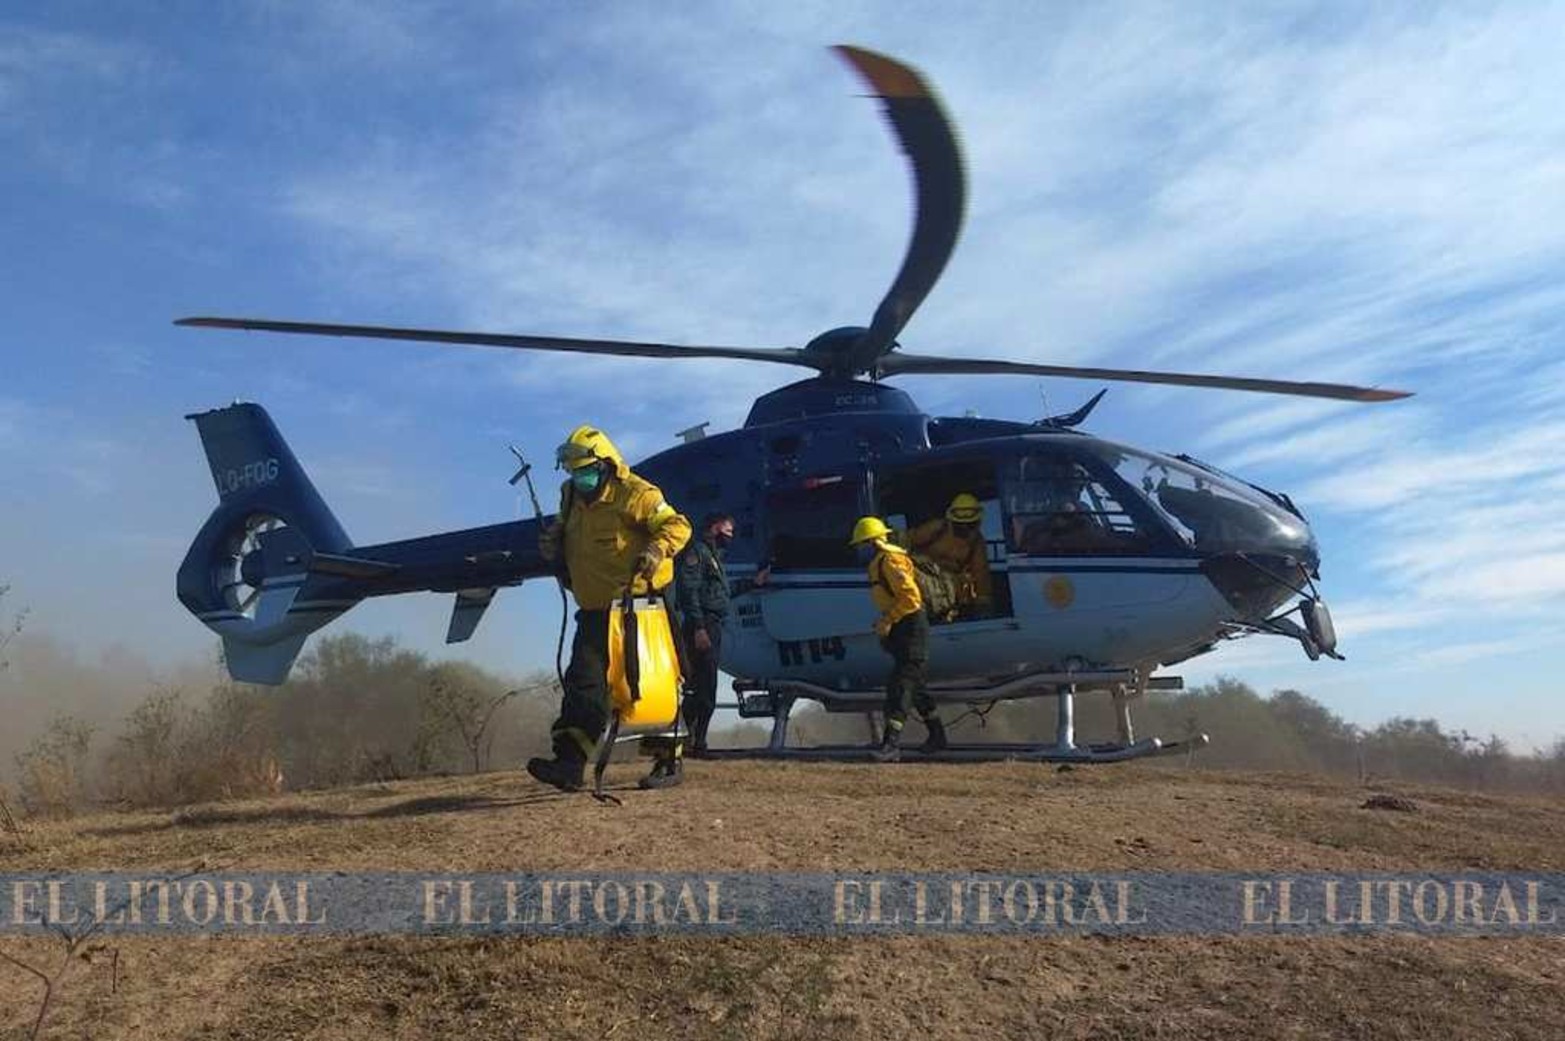 Ayer domingo dos helicópteros llevó cuadrillas que actuaron durante toda la tarde en zonas de islas impenetrables por tierra. Instruyen a Prefectura y a Gendarmería a que actúen de oficio.